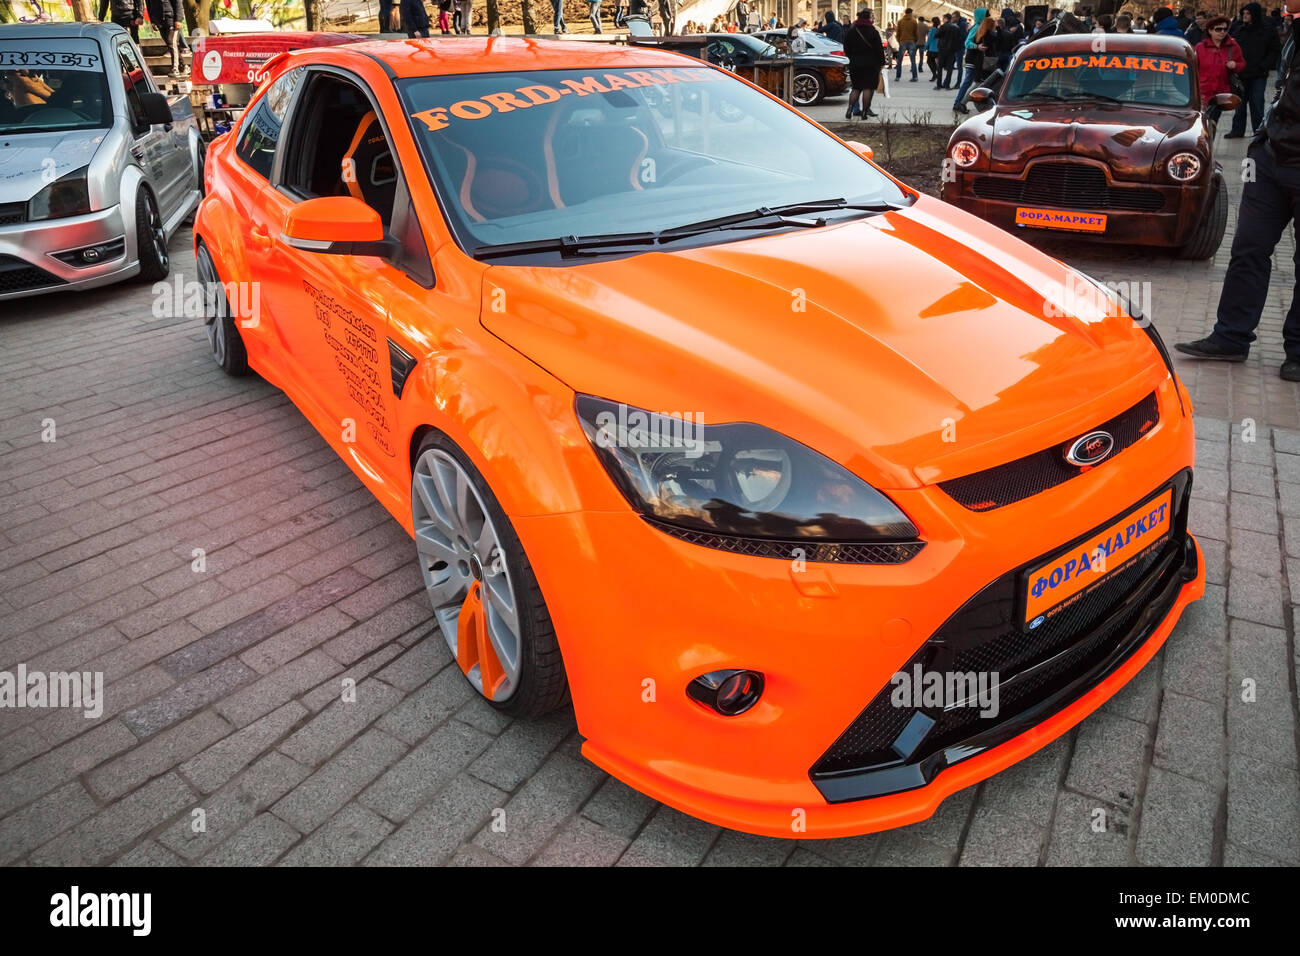 San Pietroburgo, Russia - 11 Aprile 2015: arancio luminoso in stile sportivo Ford focus auto parcheggiate sorge sulla strada. Ampio angolo Foto Stock